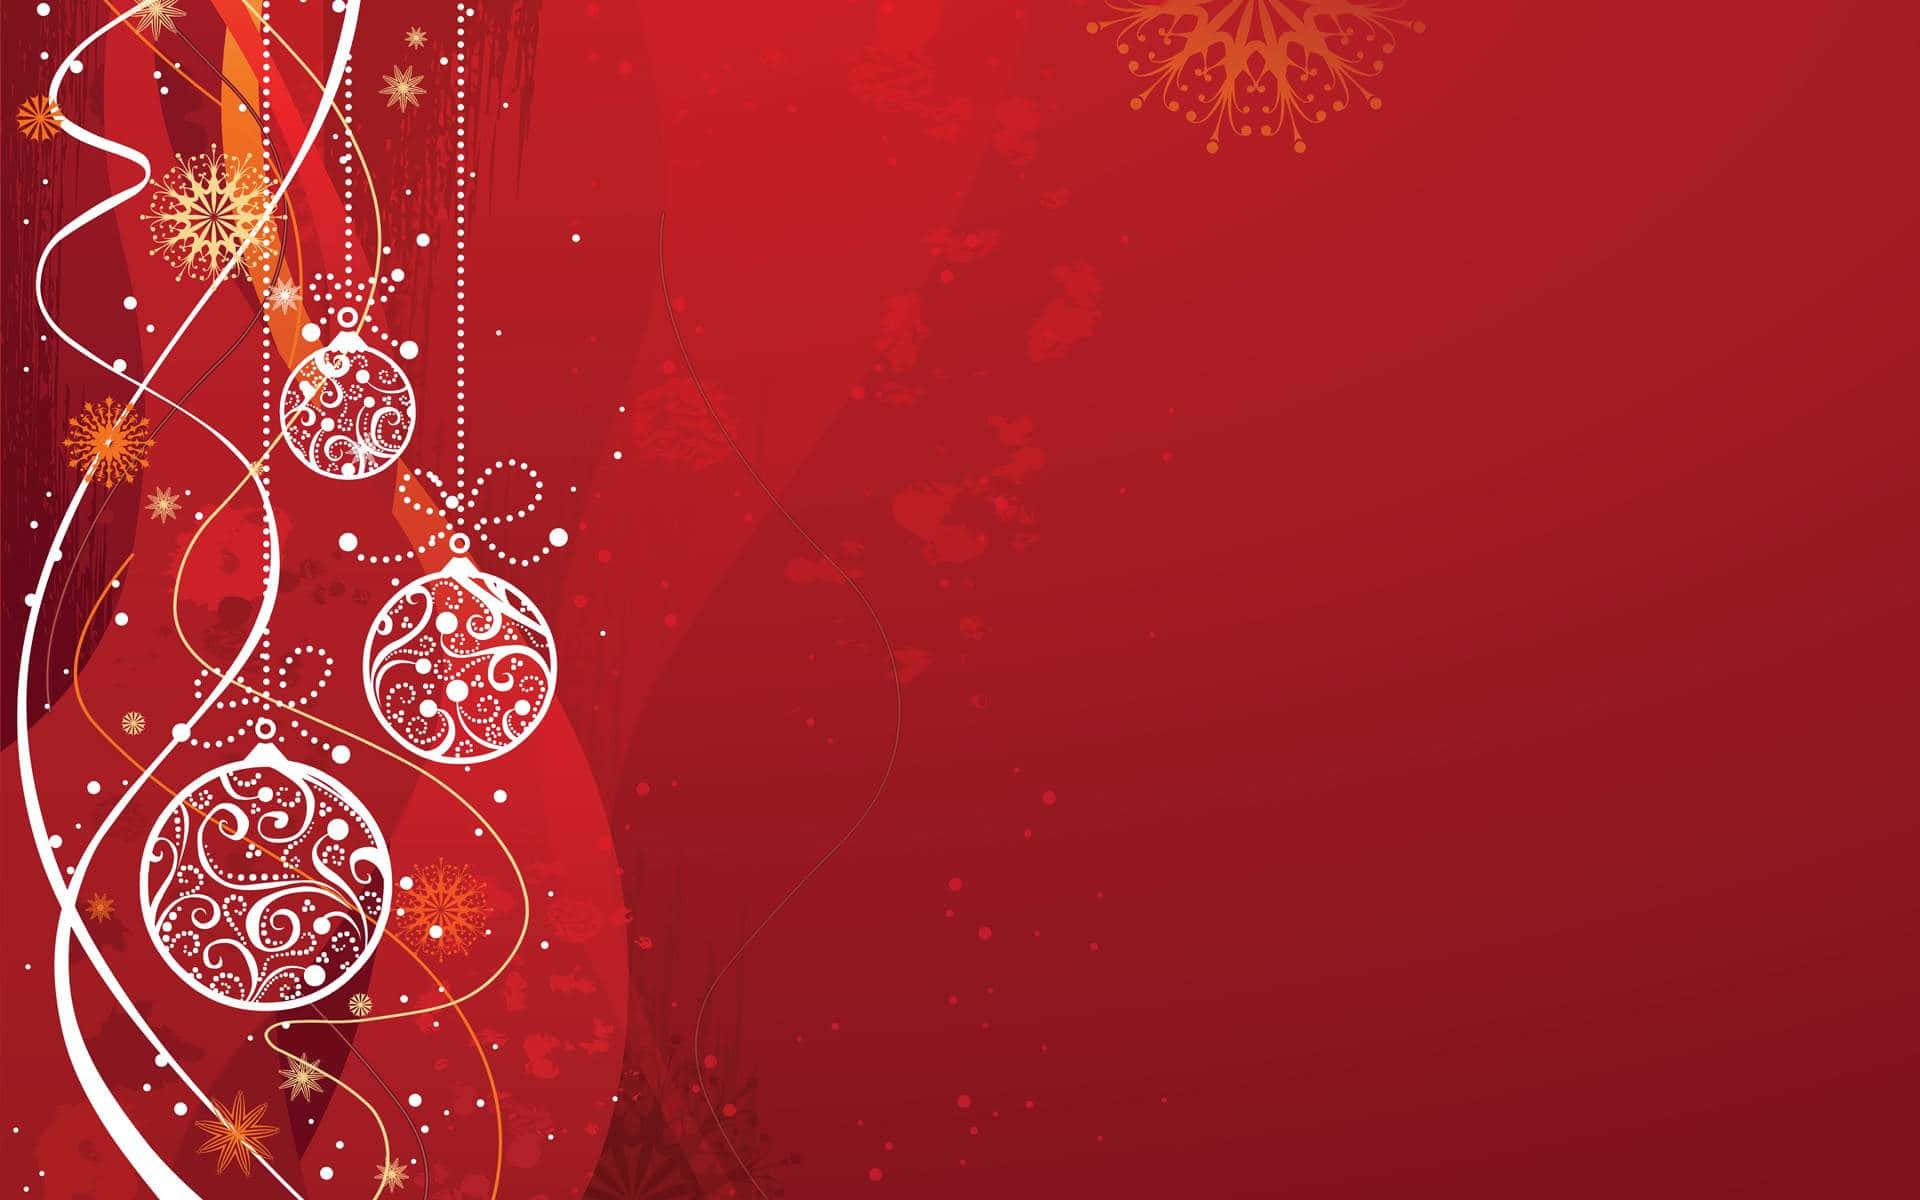 Celebrael Espíritu Navideño Con Un Fondo Brillante Y Colorido De Navidad